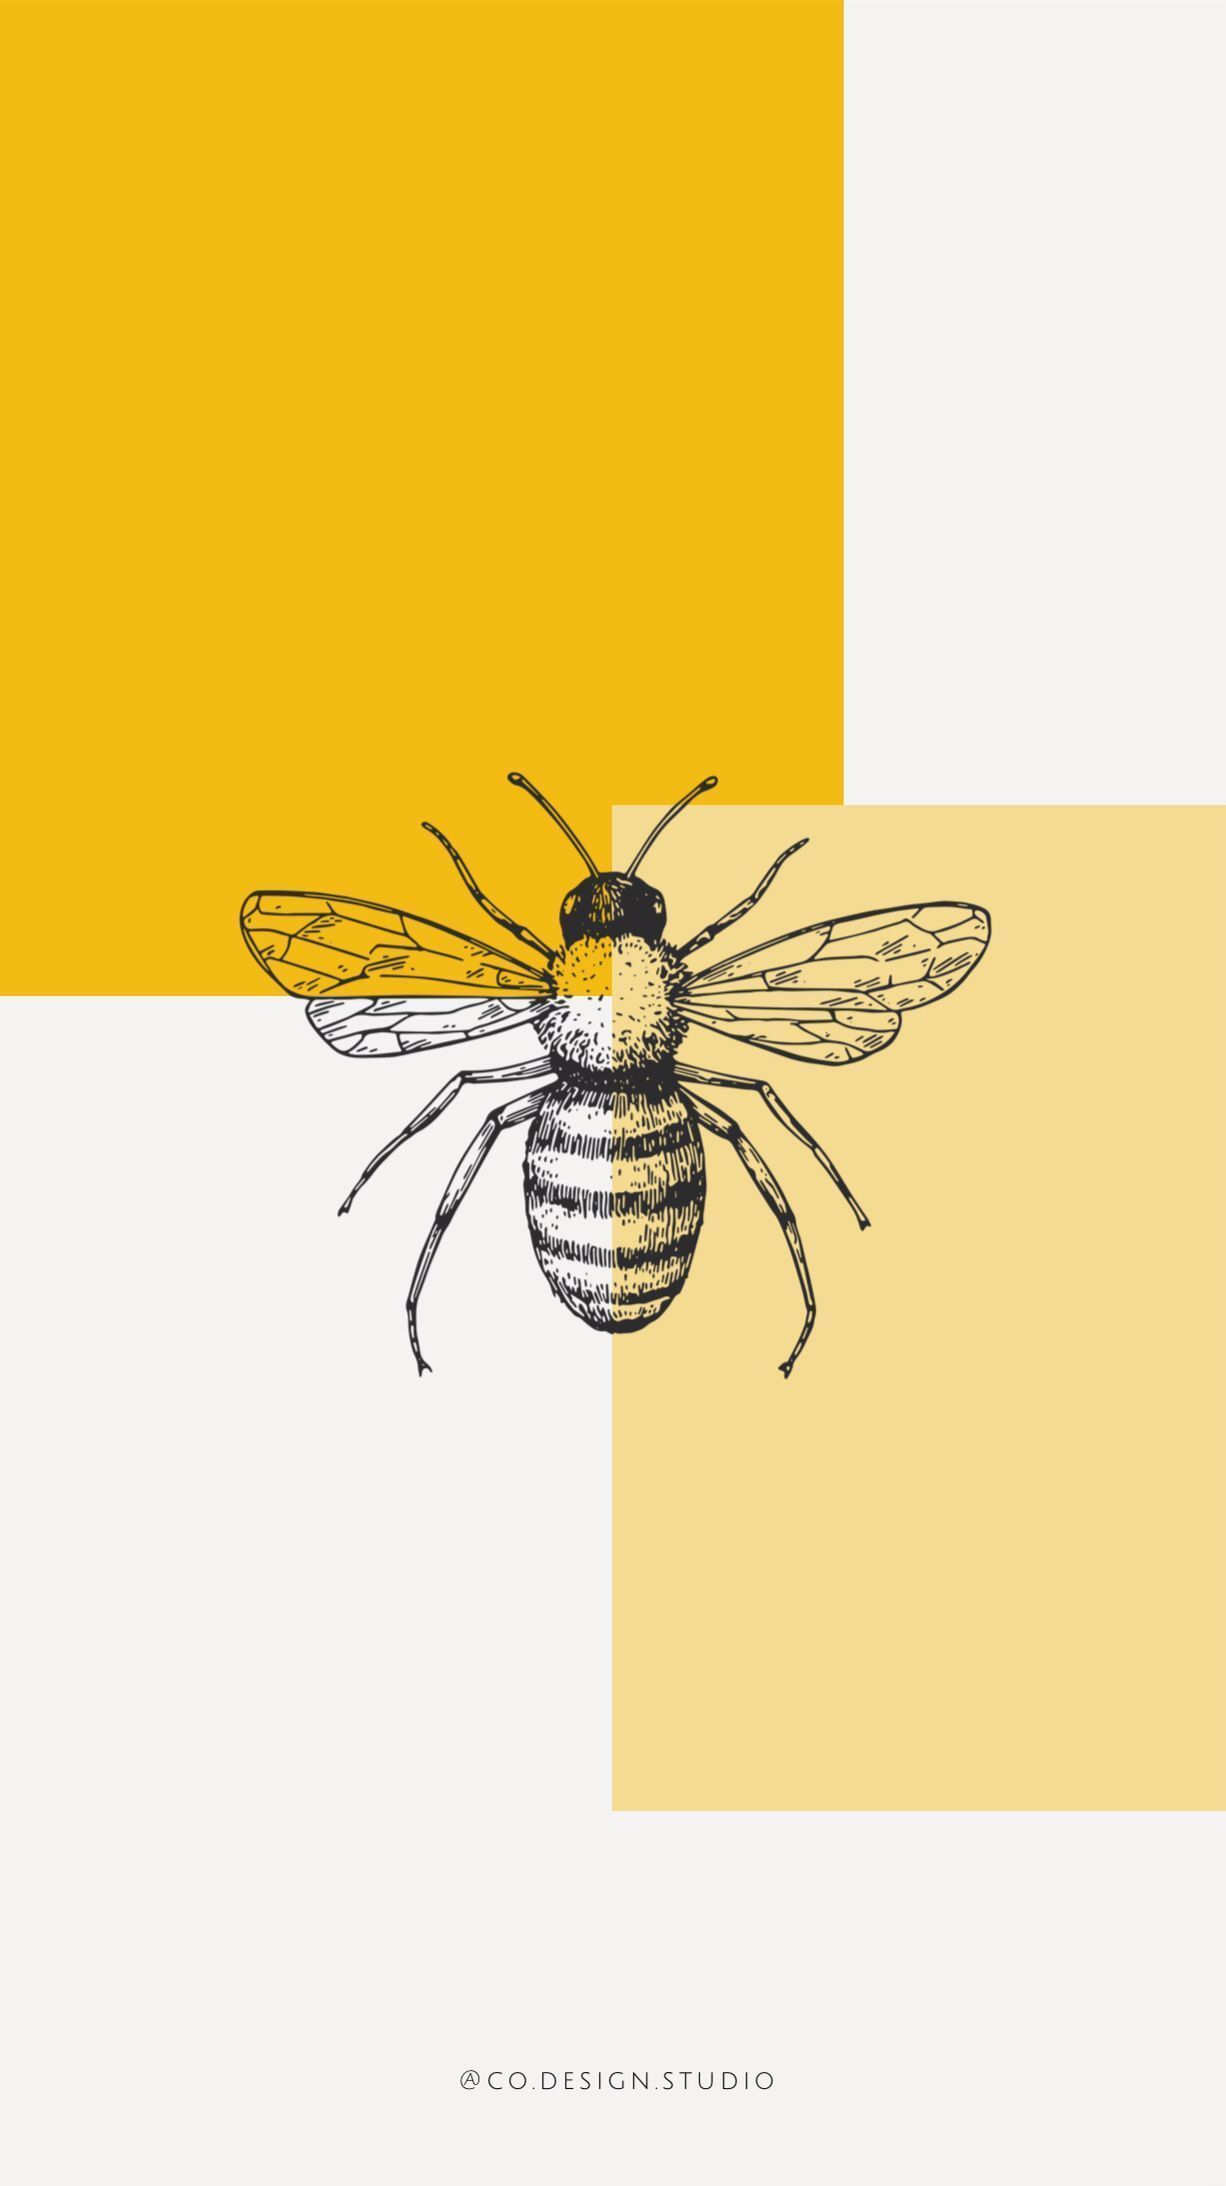 wallpaper #iphone #graphicdesign #yellow #mustard #bee #honey. Art wallpaper, Yellow wallpaper, Cute wallpaper